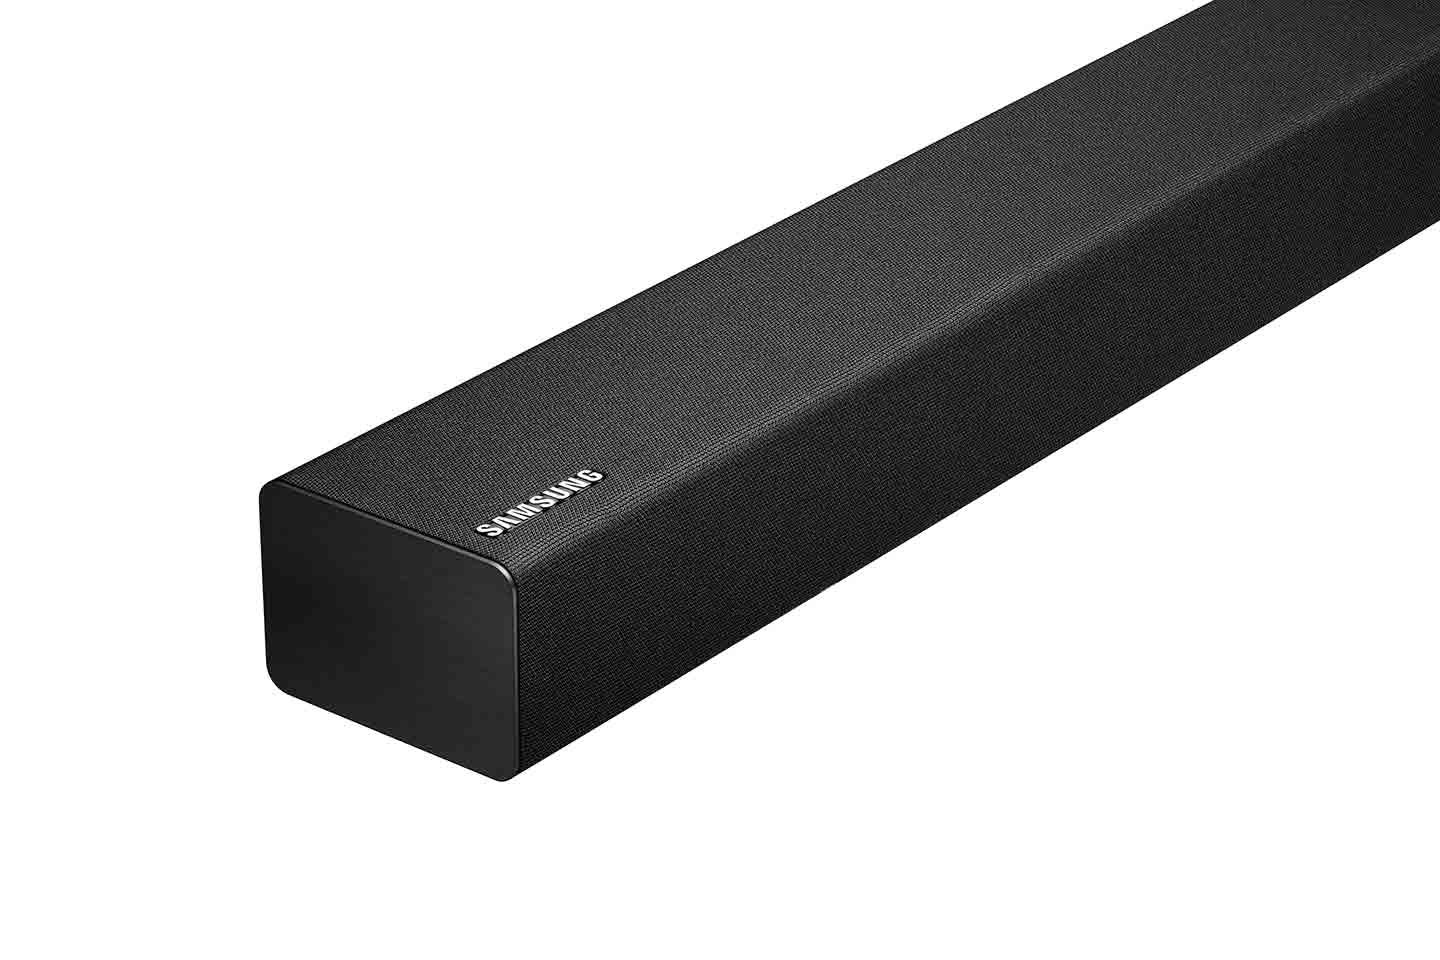 200W 2.1 Ch Soundbar with Wireless Home Theater - HW-M360/ZA | Samsung US